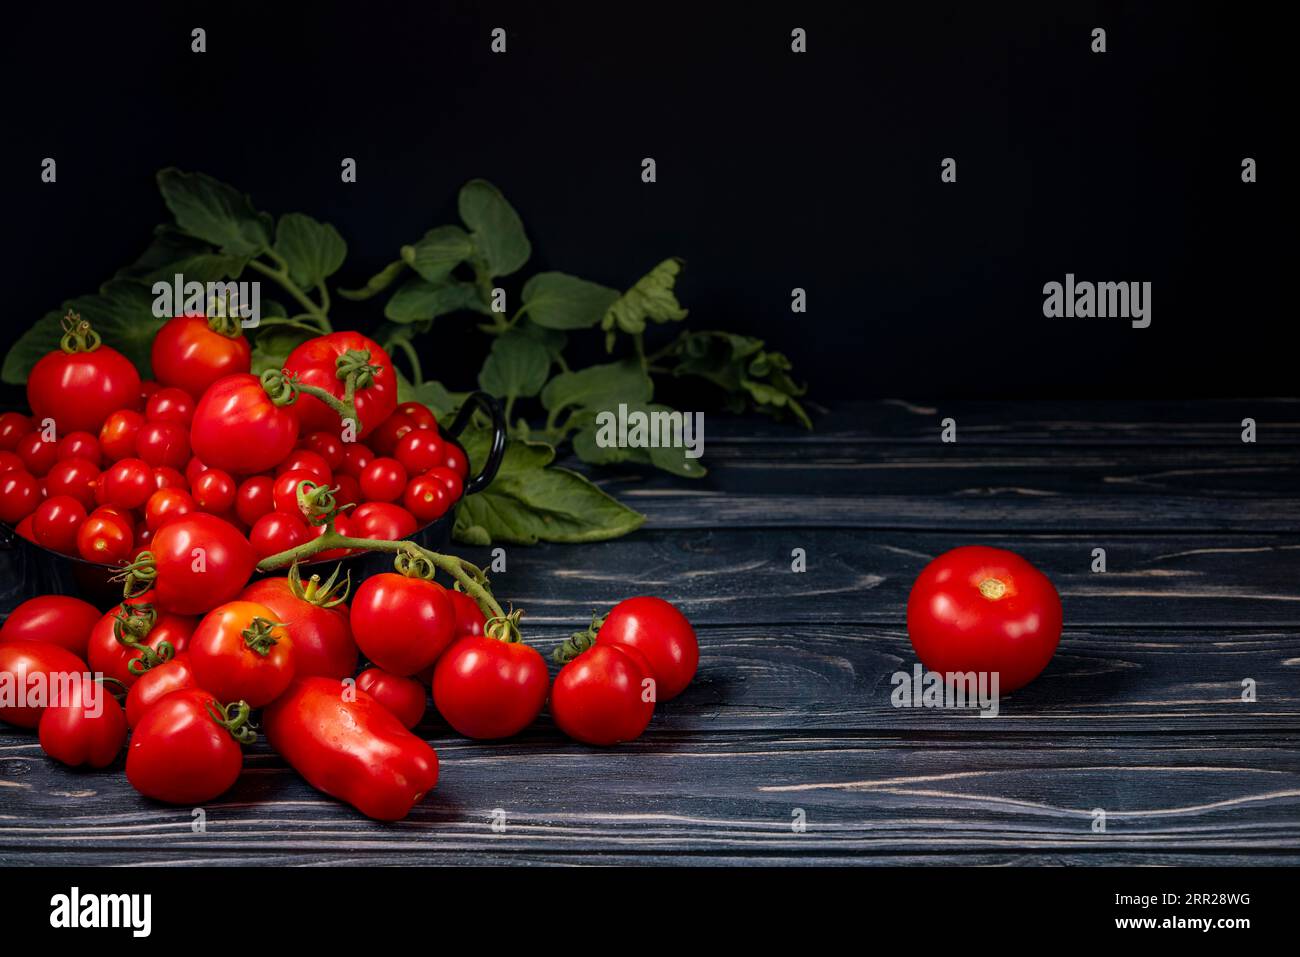 Varie varietà di pomodori all'interno e davanti al vaso nero su legno, foglie di pomodoro, sala copia, buio Foto Stock